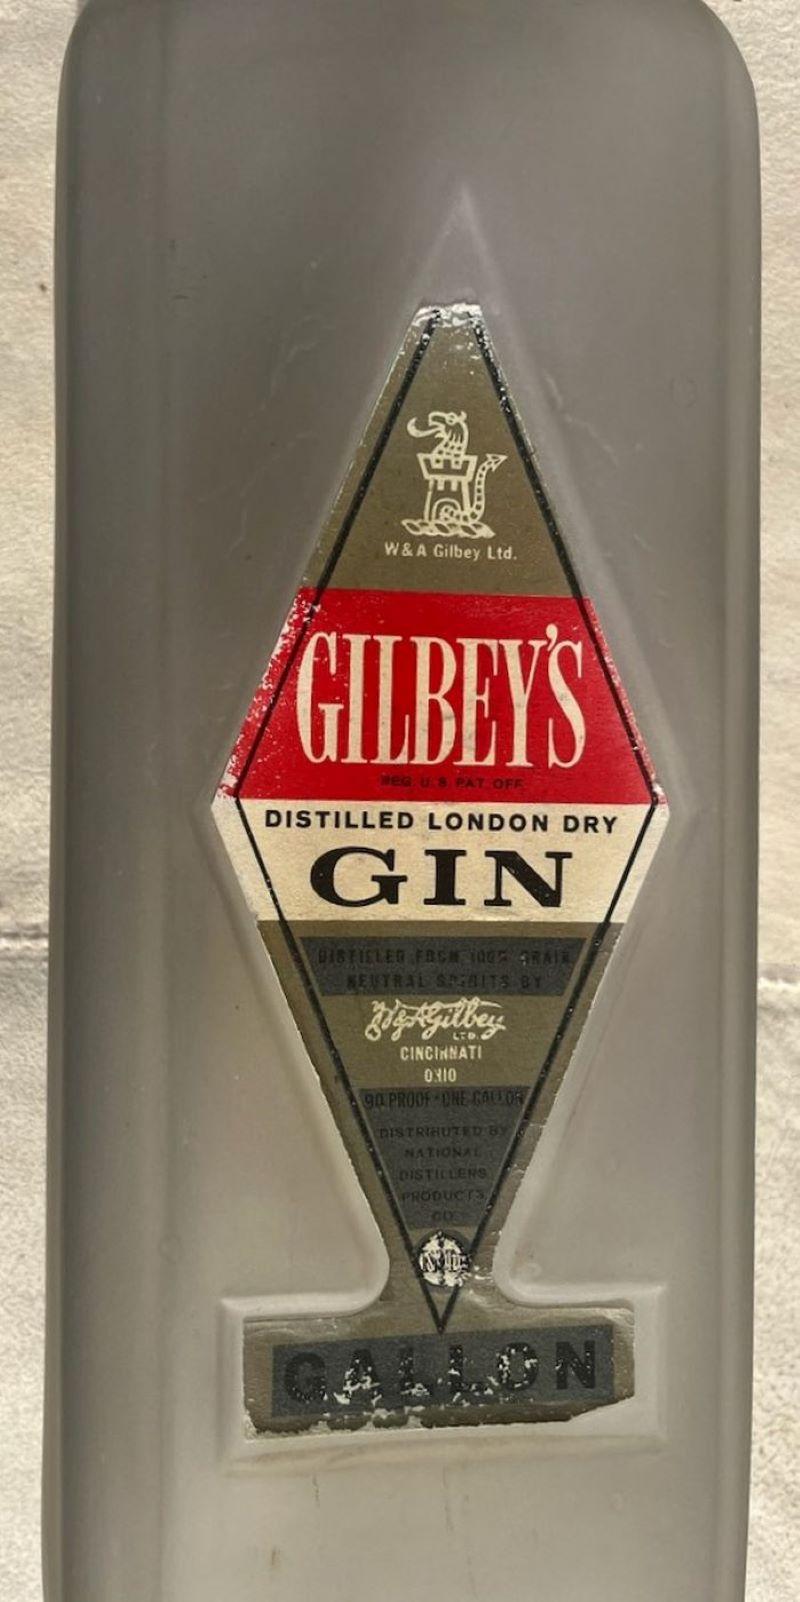 Diese monumentale Gilbey's Gin-Flasche in Handels- oder Bargröße. Es könnte auch eine Balkenanzeige gewesen sein.